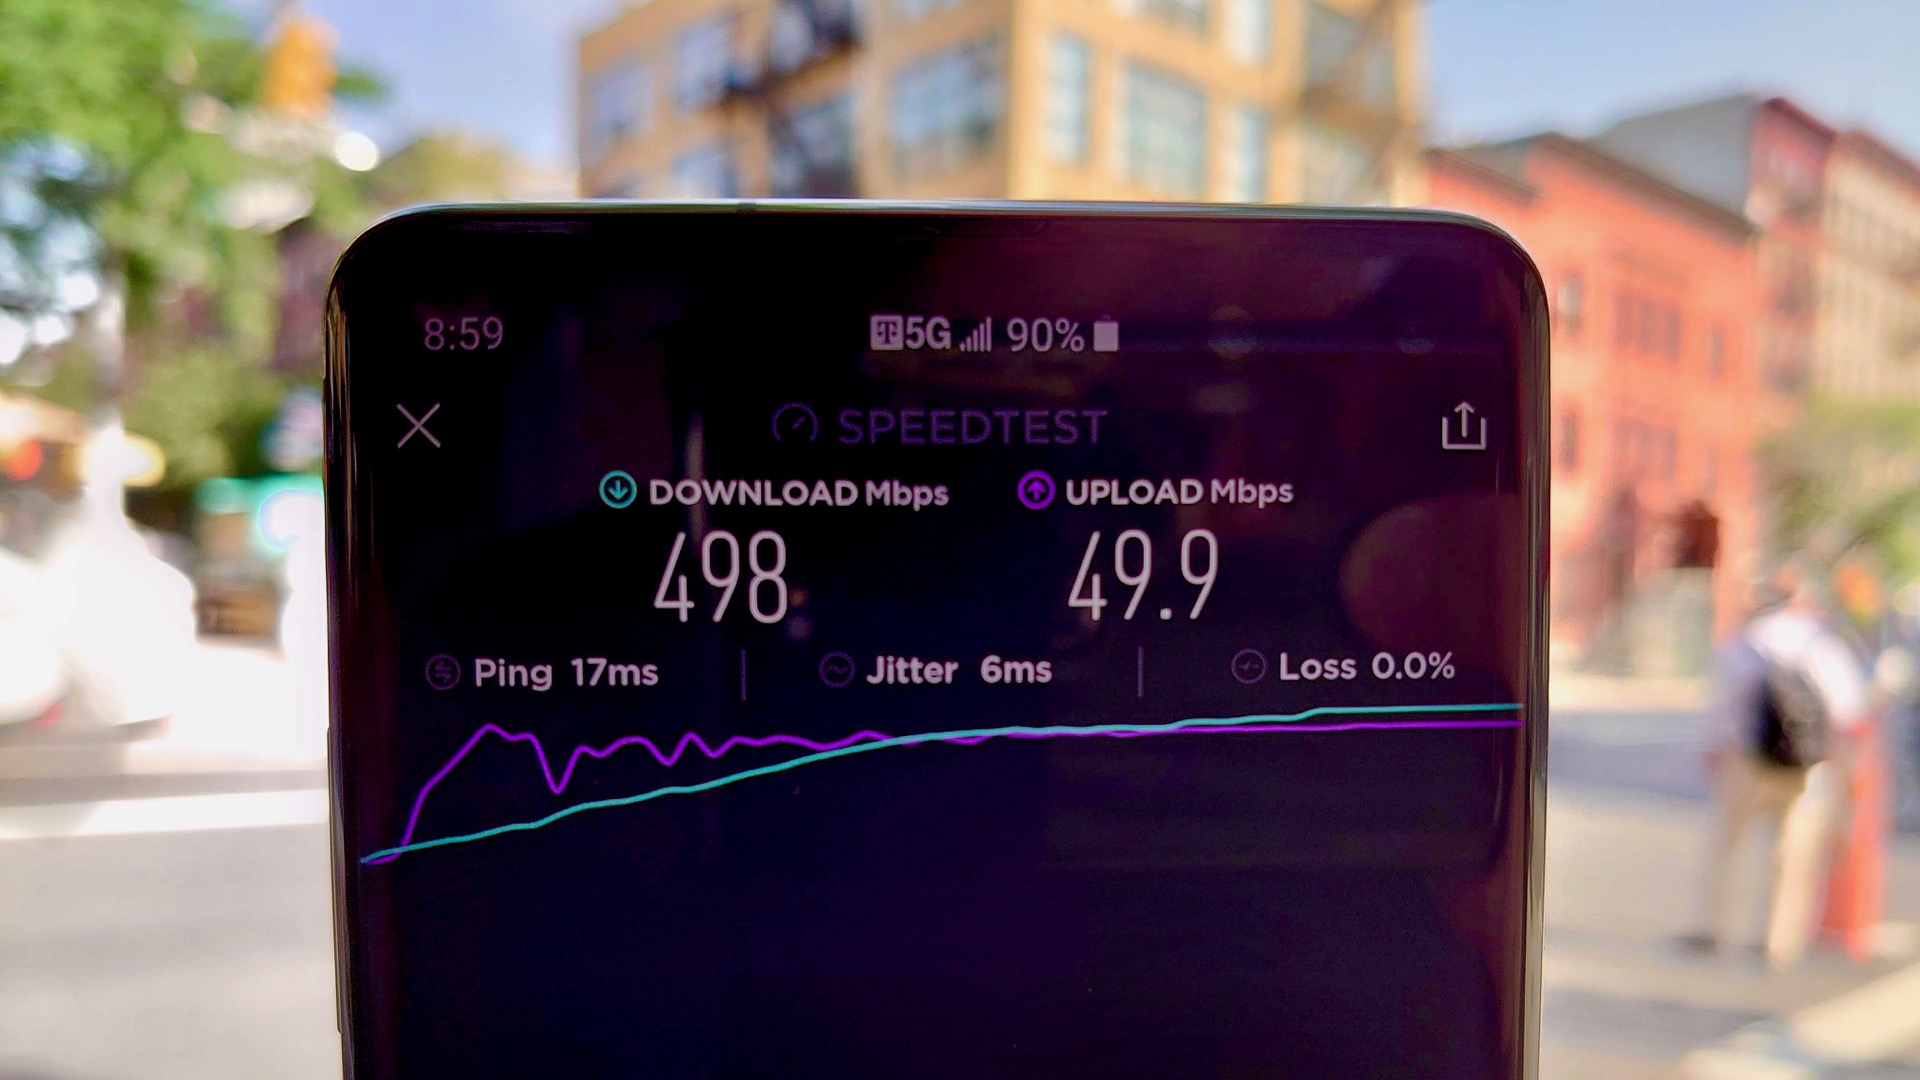 T-Mobile 5G审查速度测试号码4